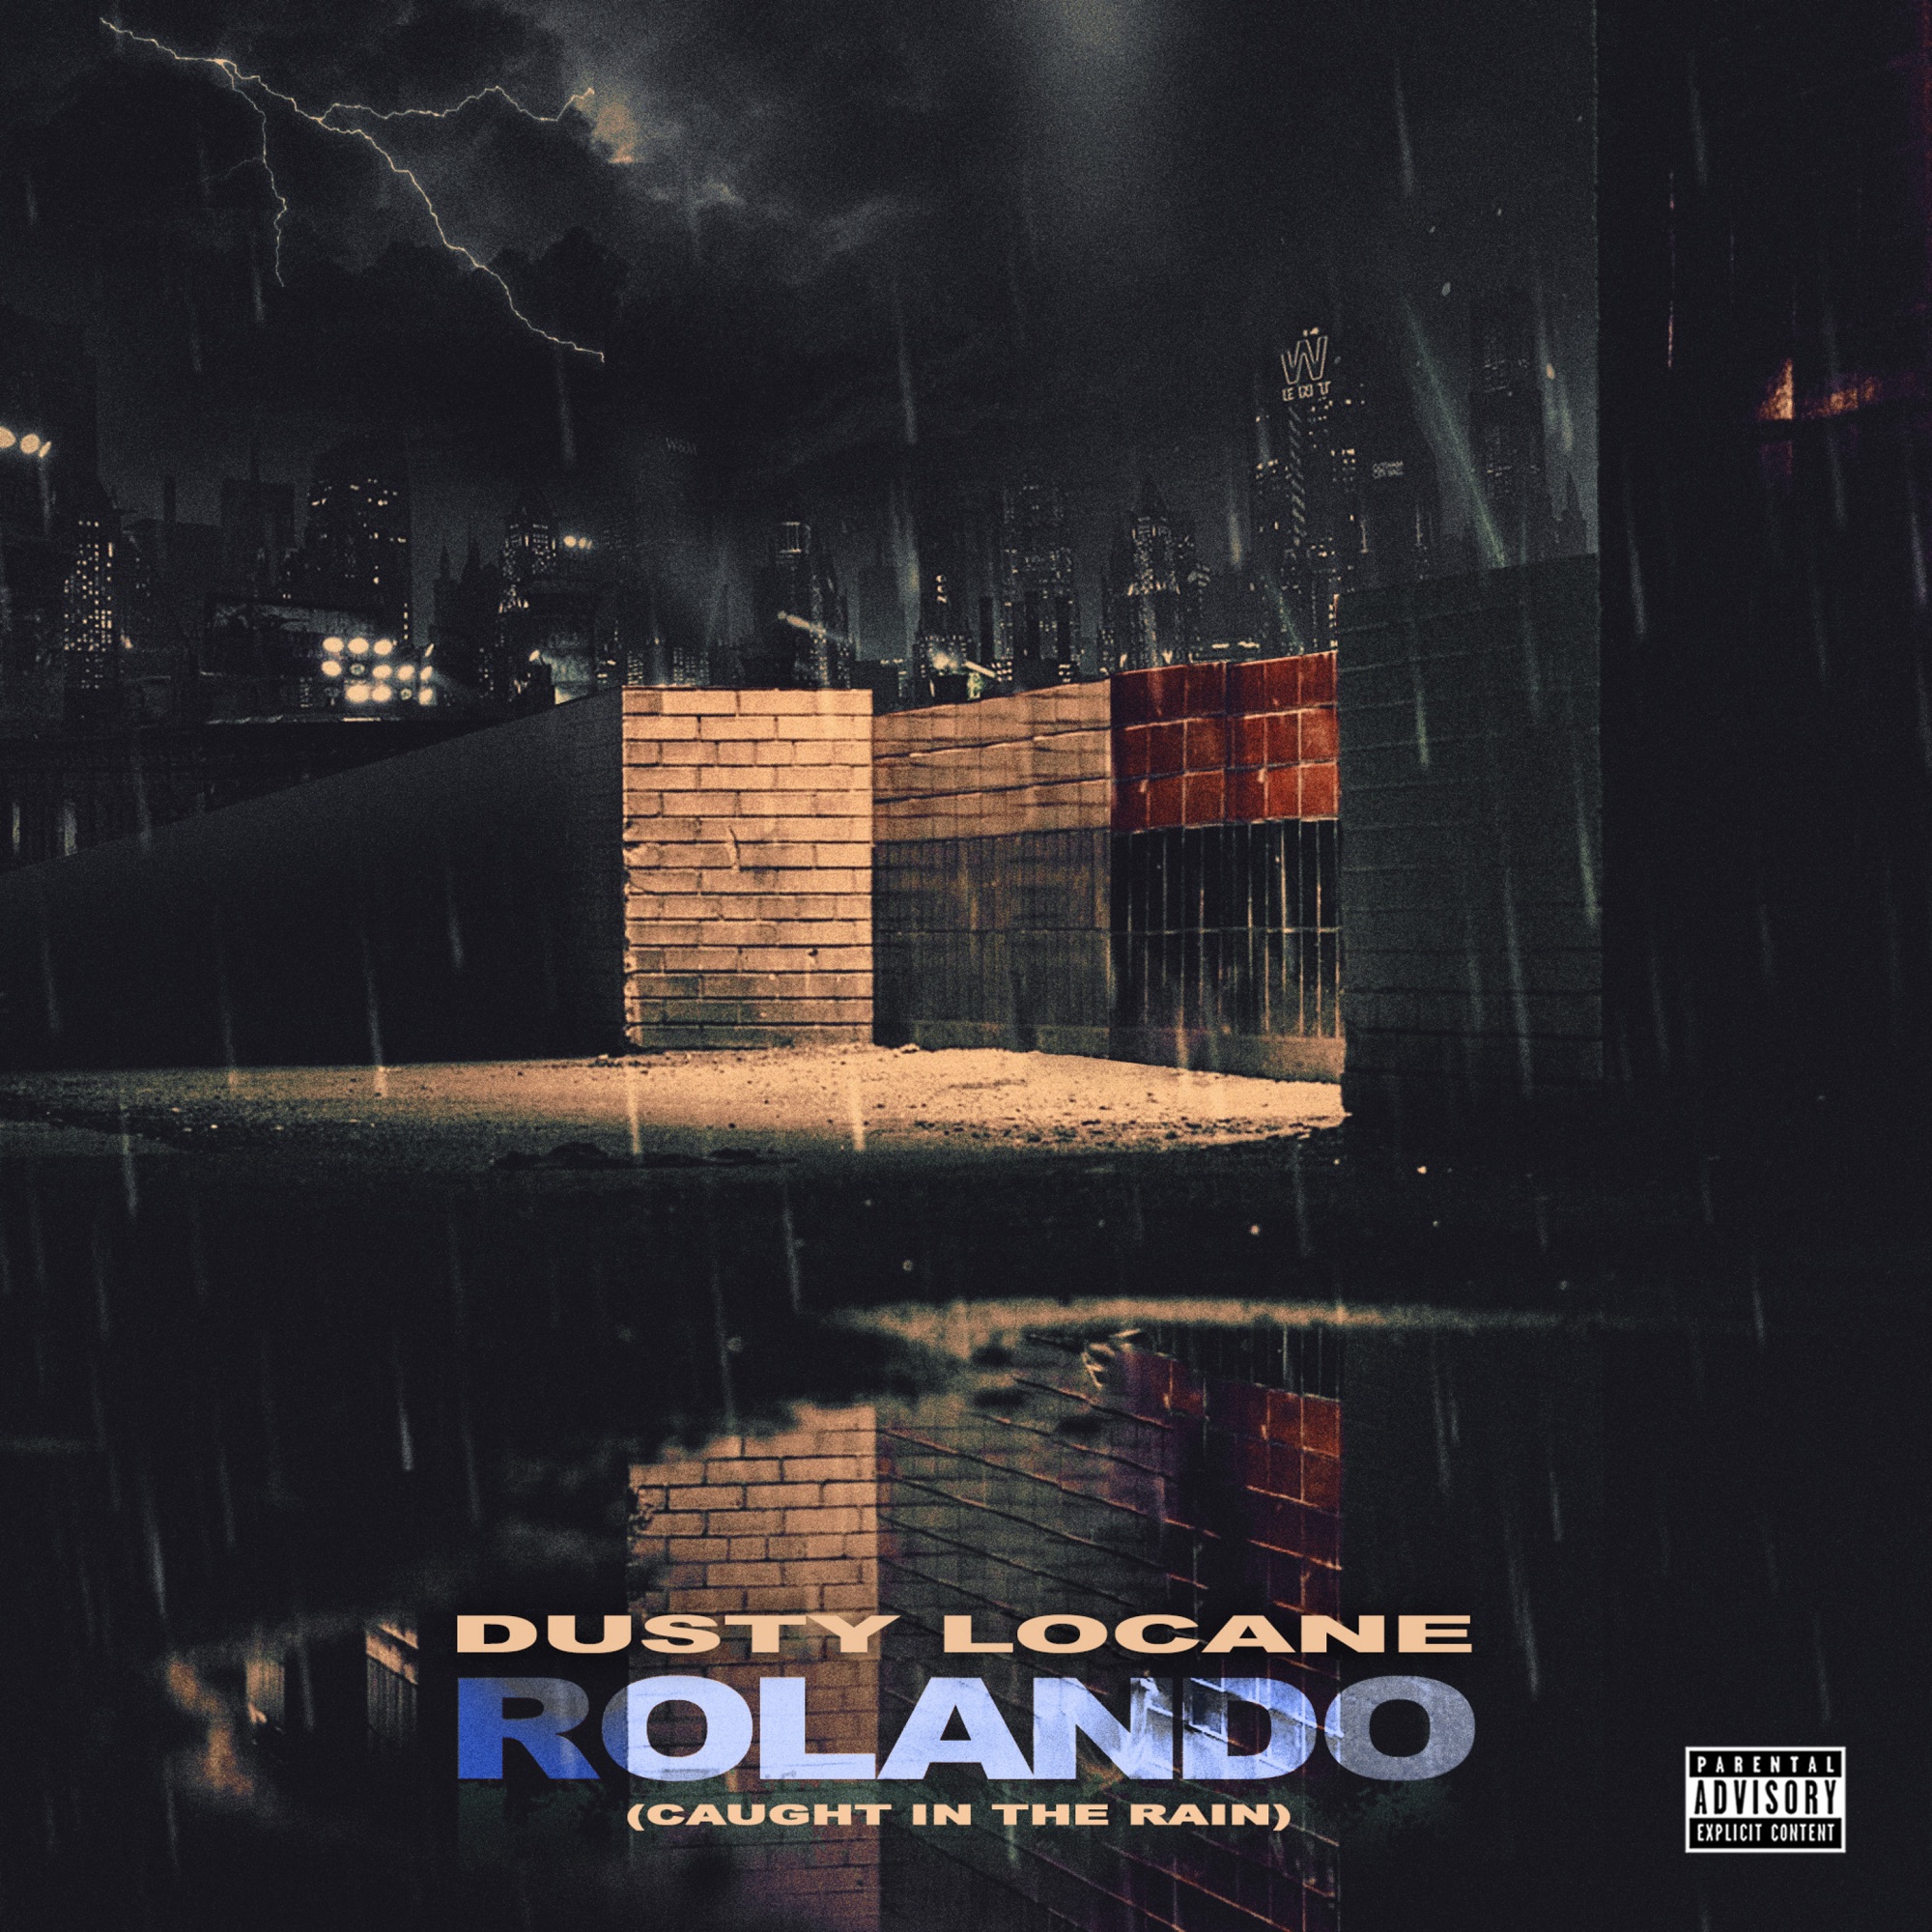 DUSTY LOCANE - Rolando (Caught In The Rain) - Single